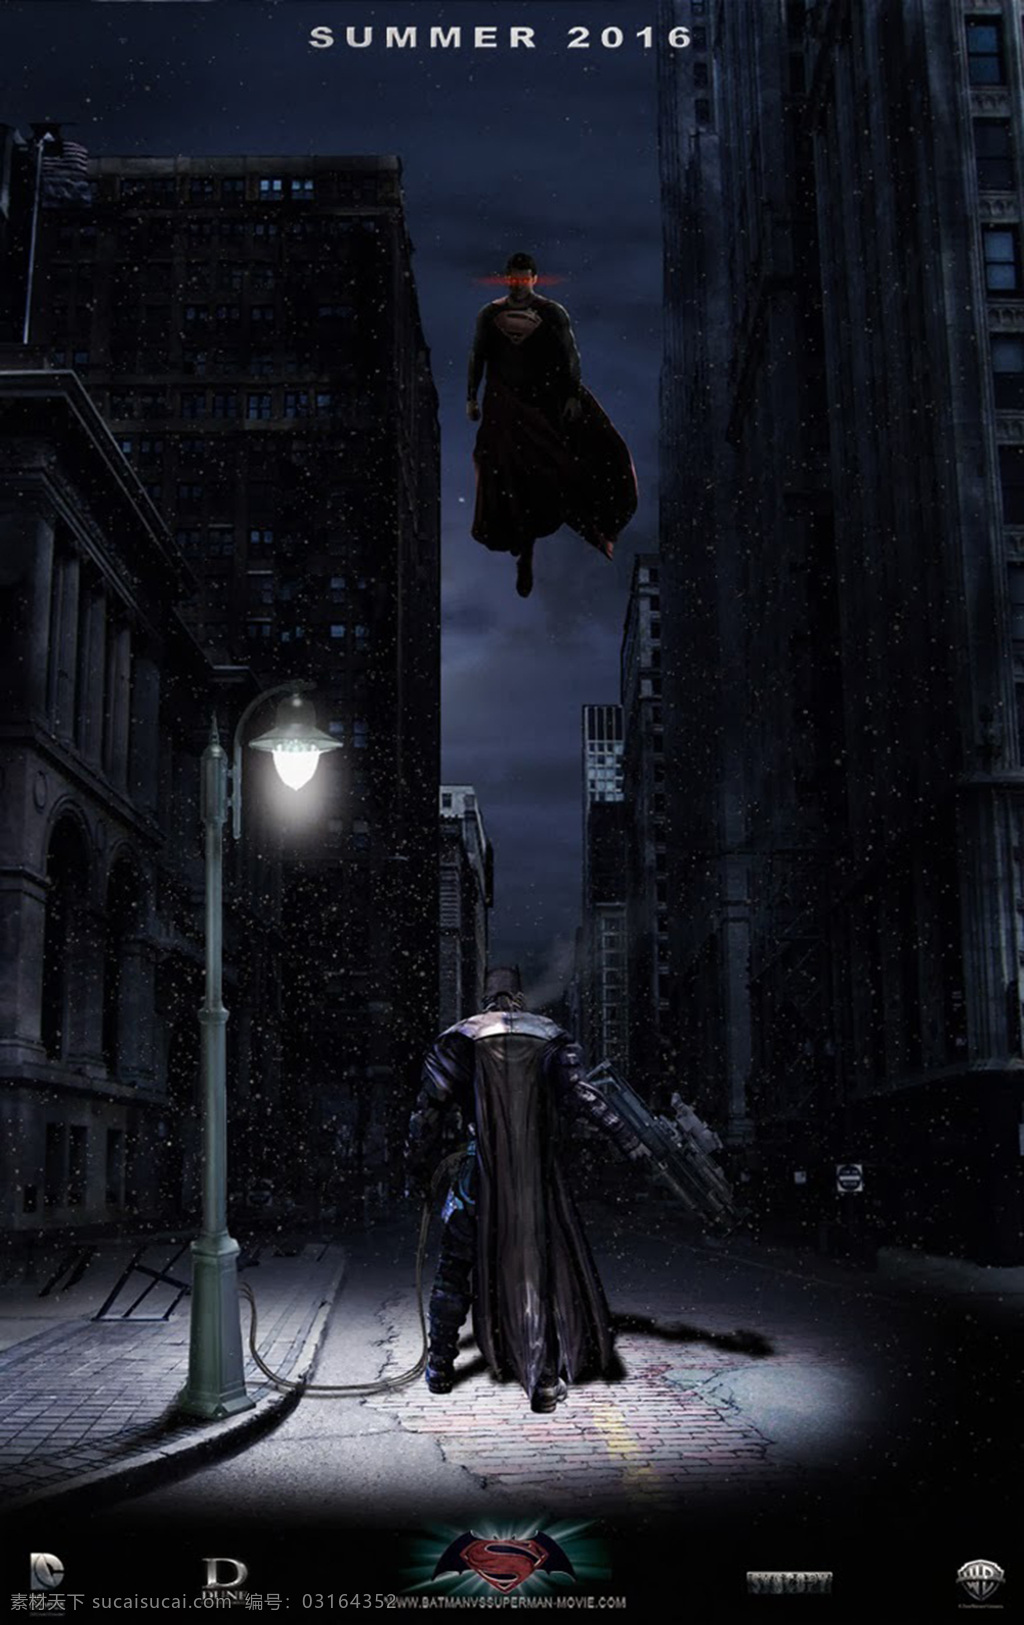 超人 蝙蝠侠 电影海报 电影壁纸 高清壁纸 电影宣传画 宣传海报 大战 文化艺术 影视娱乐